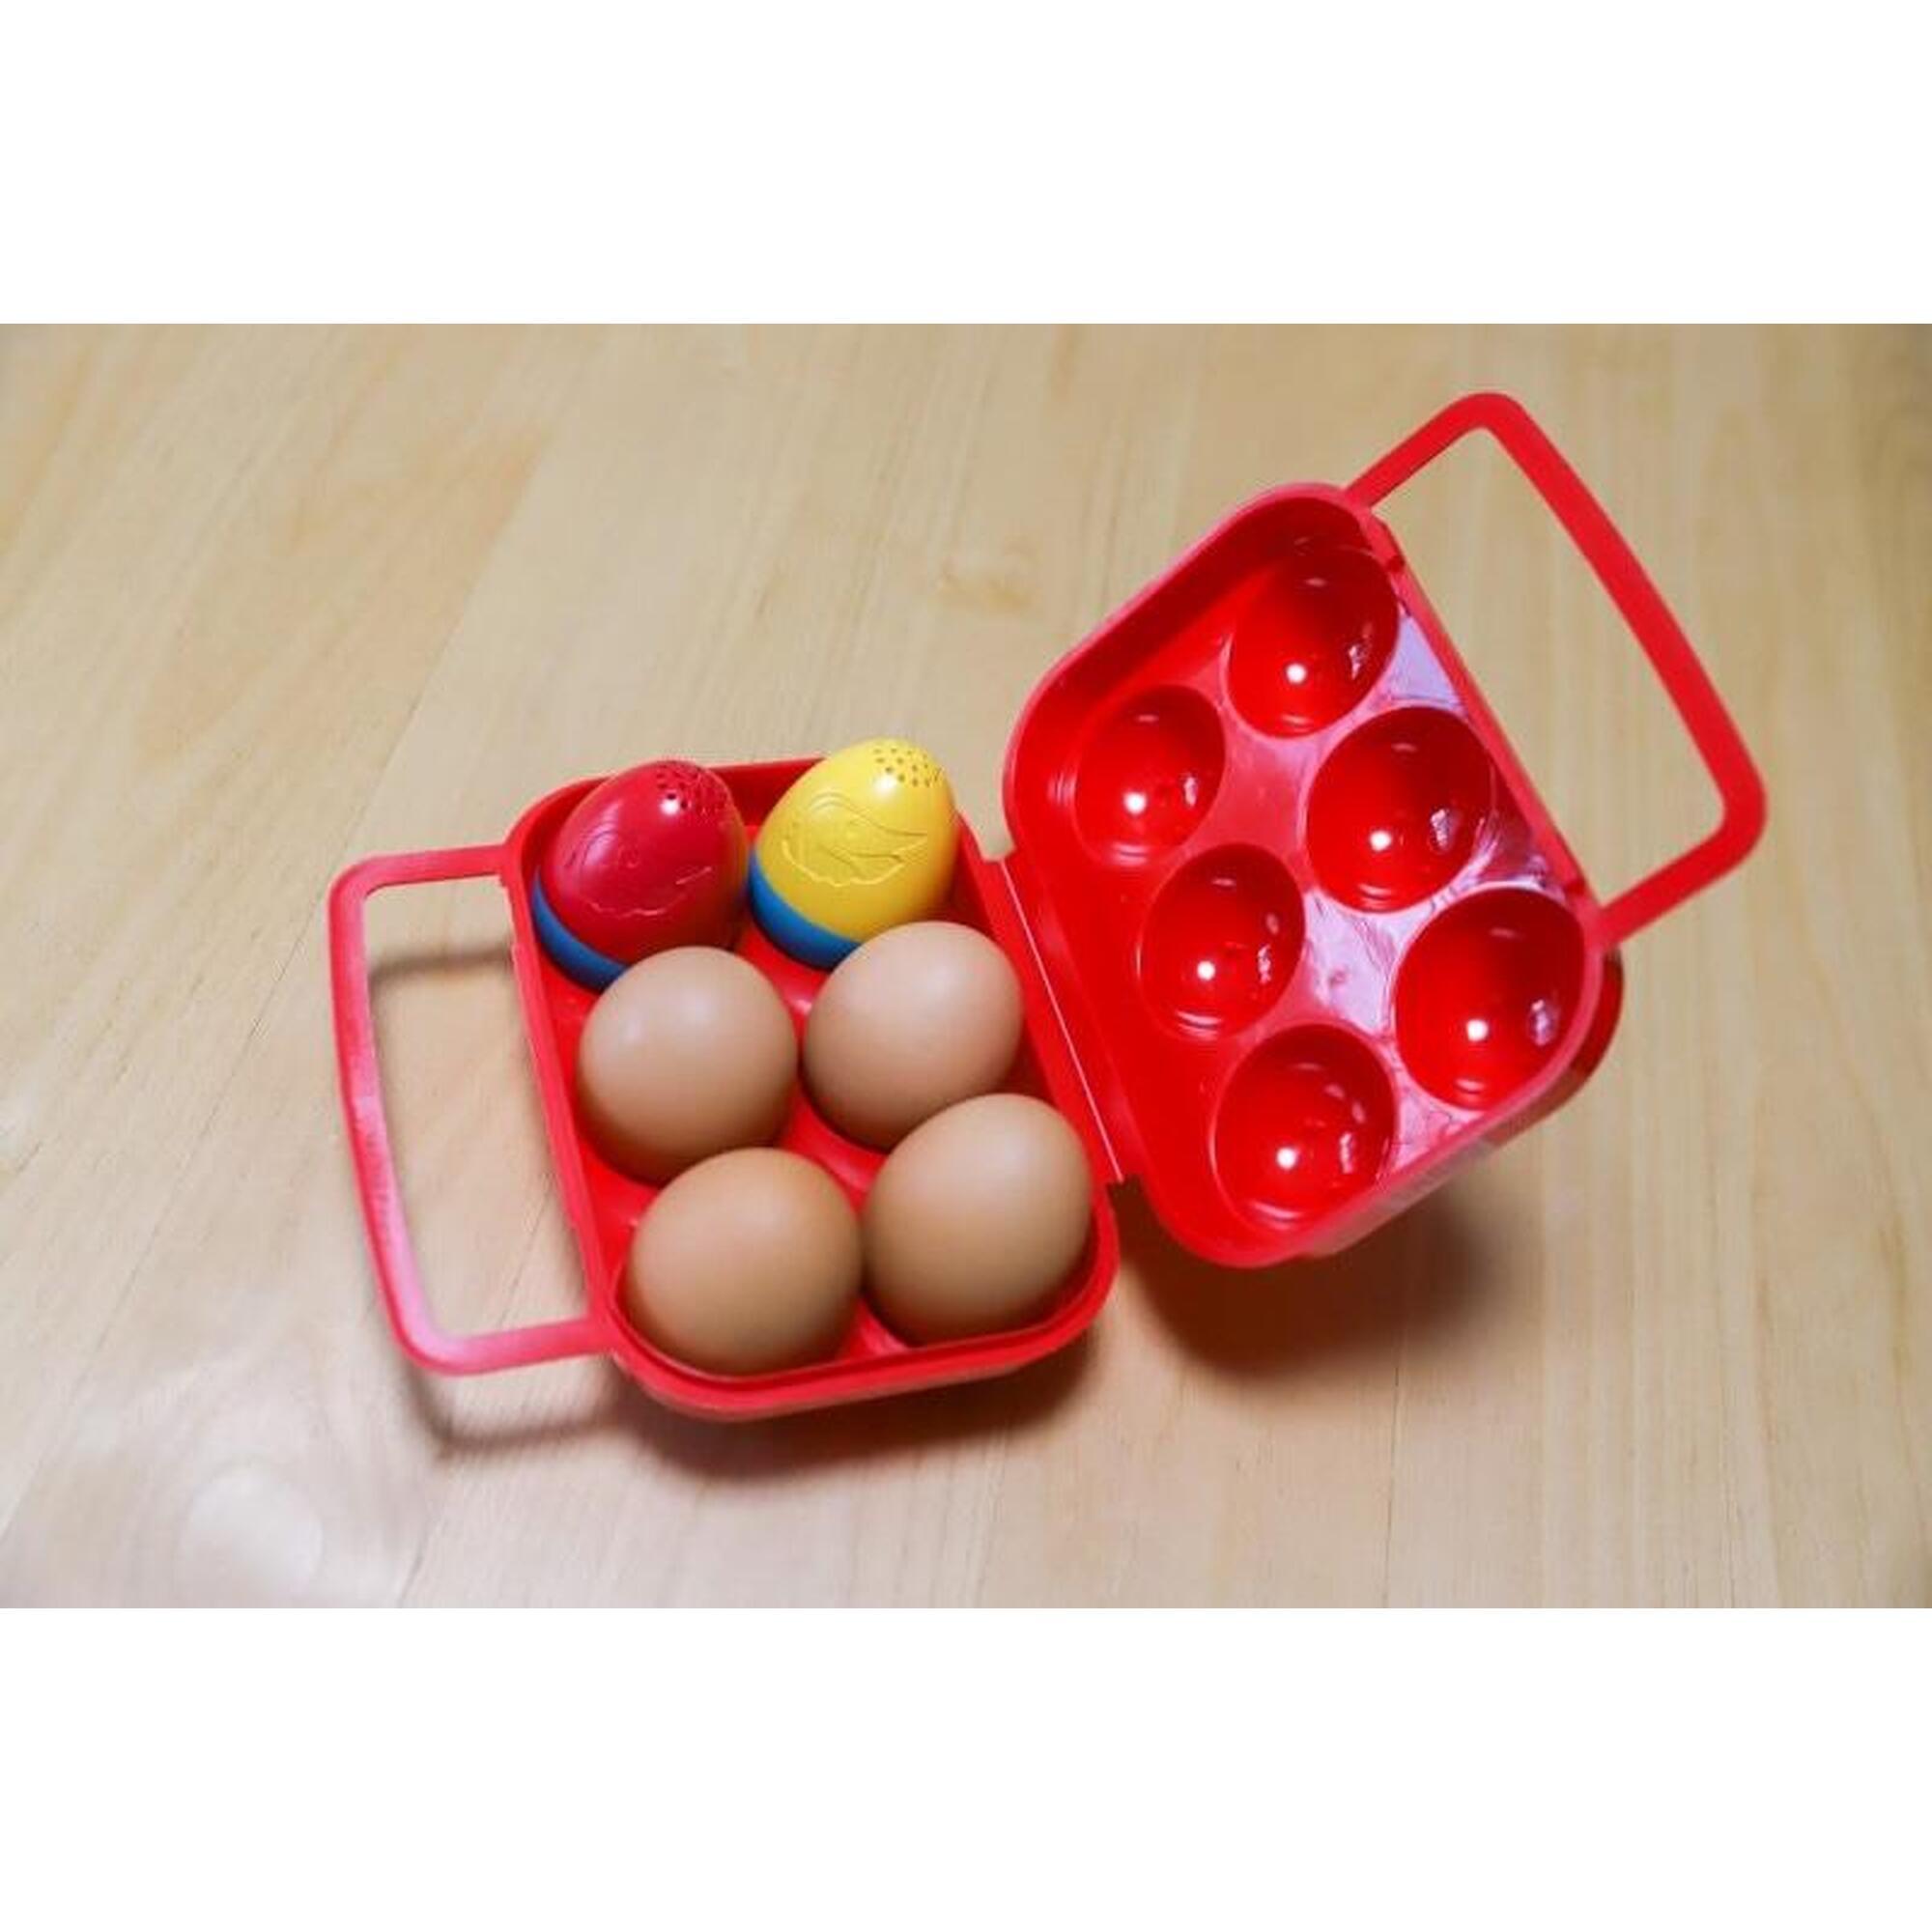 Booby Egg Salt & Pepper 雞蛋收納盒連胡椒粉及鹽樽